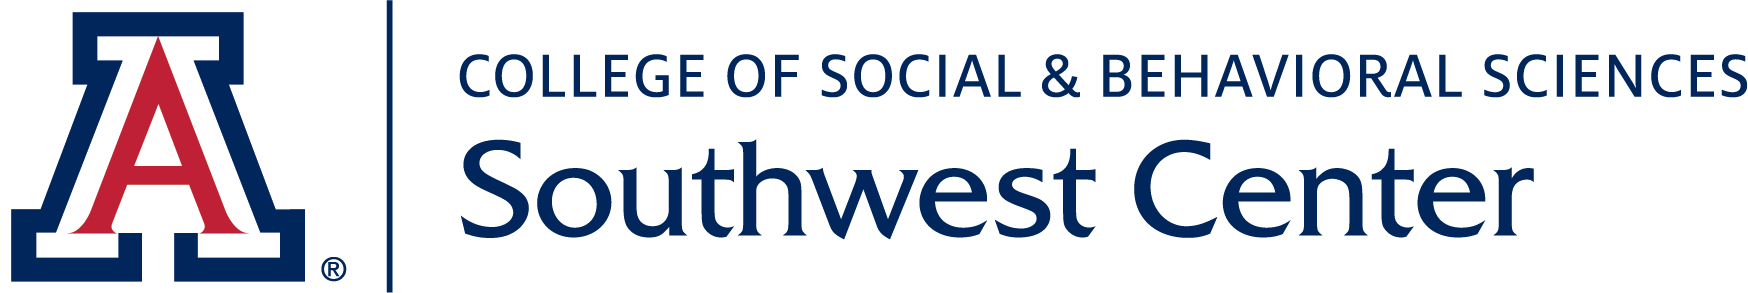 Southwest Center_College of Social & Behavioral Sciences_Webheader.png